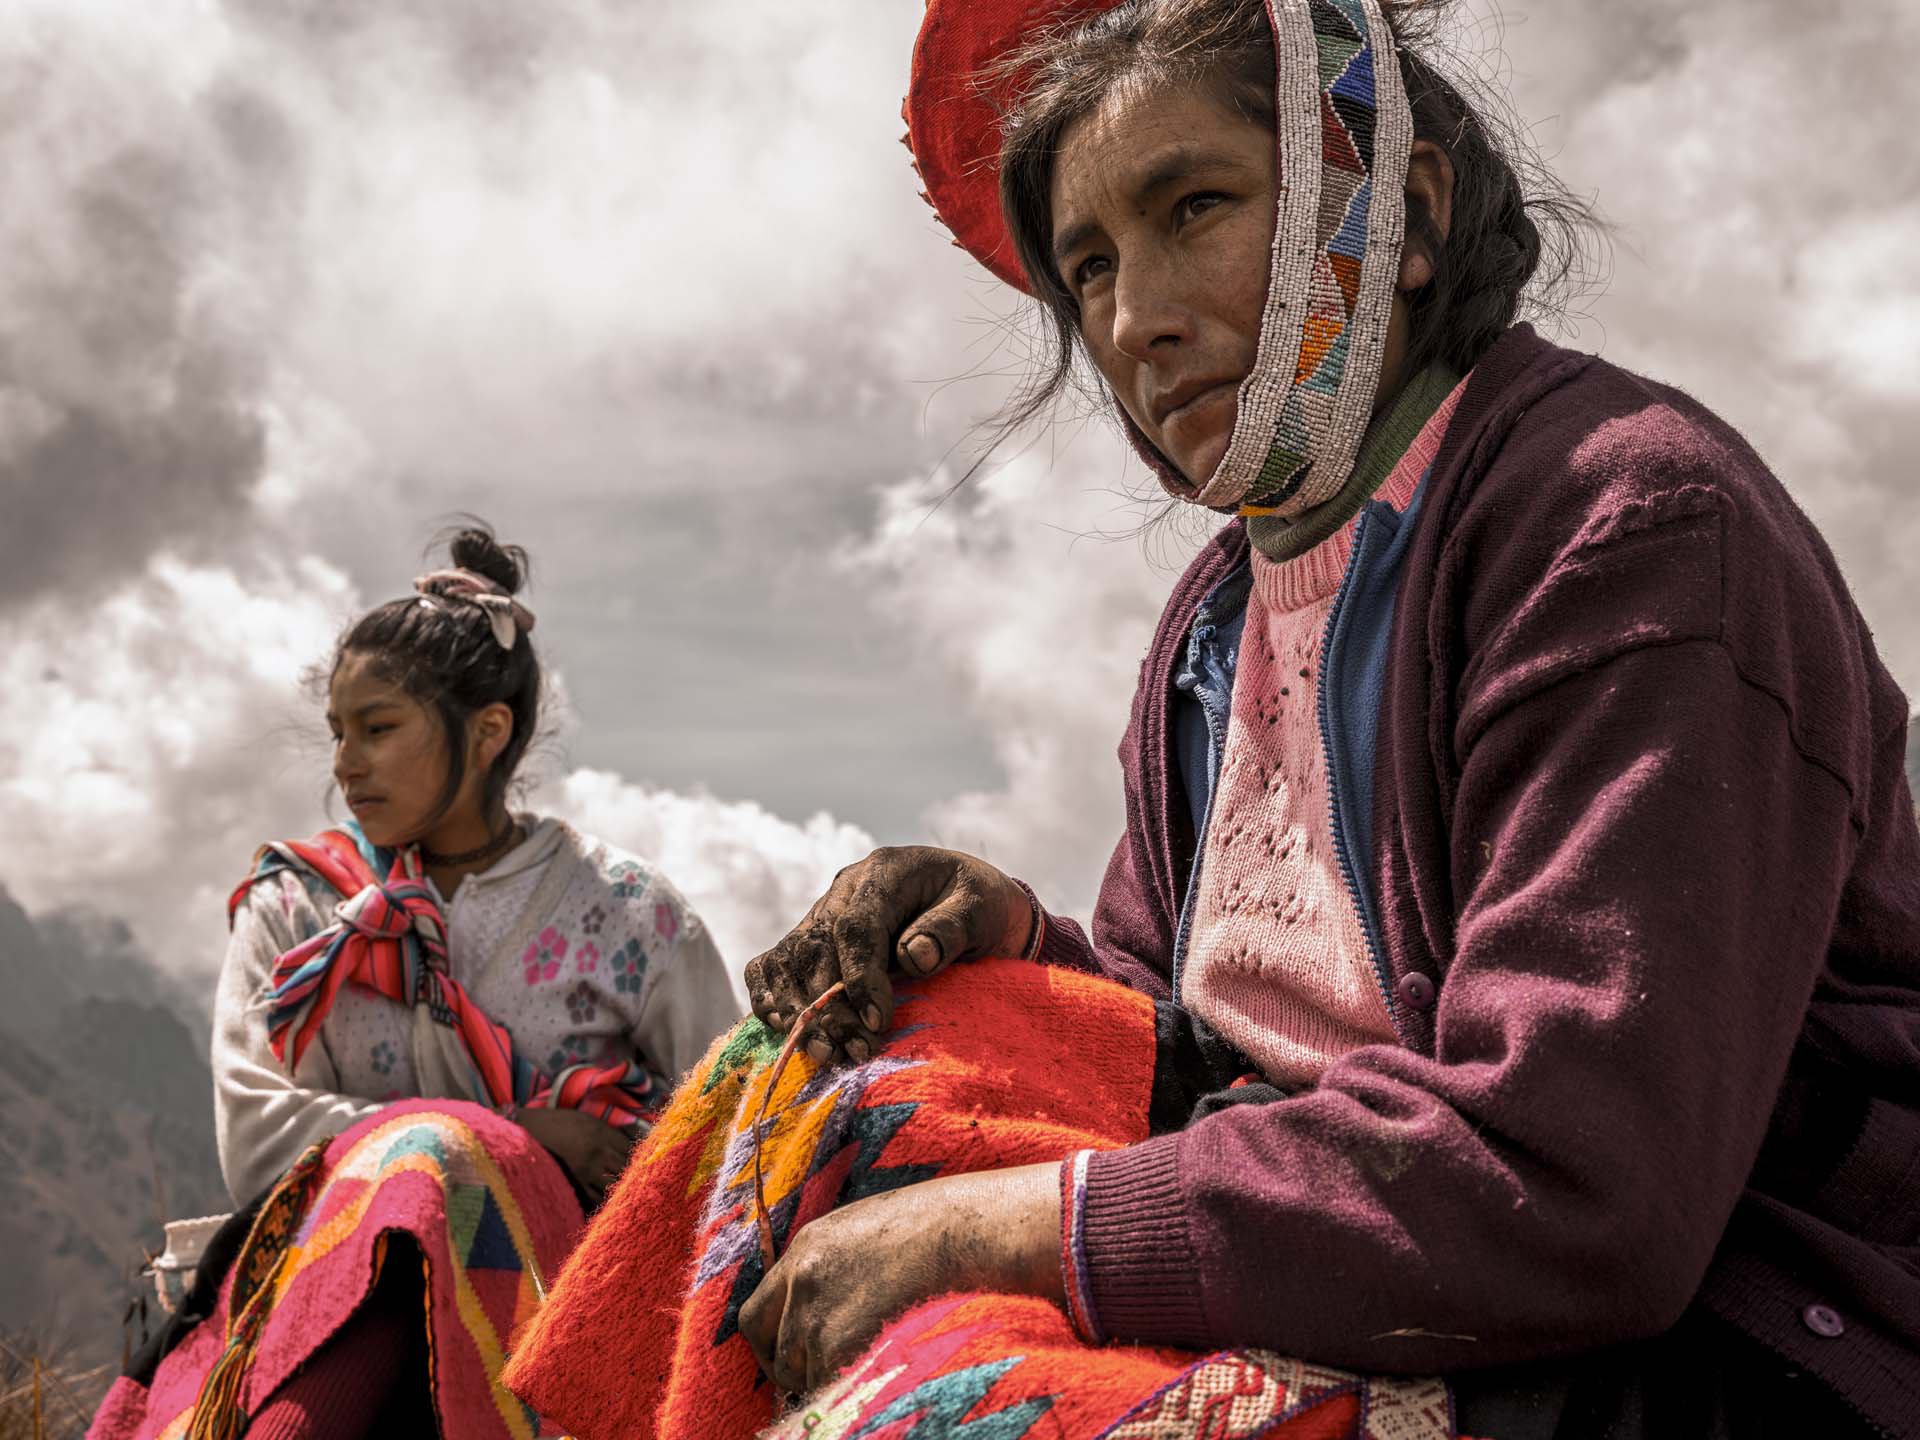 Las comunidades se preparan durante todo el año para el “Queñua Raymi”, cuya celebración se lleva a cabo entre diciembre y febrero. / Musuk Nolte